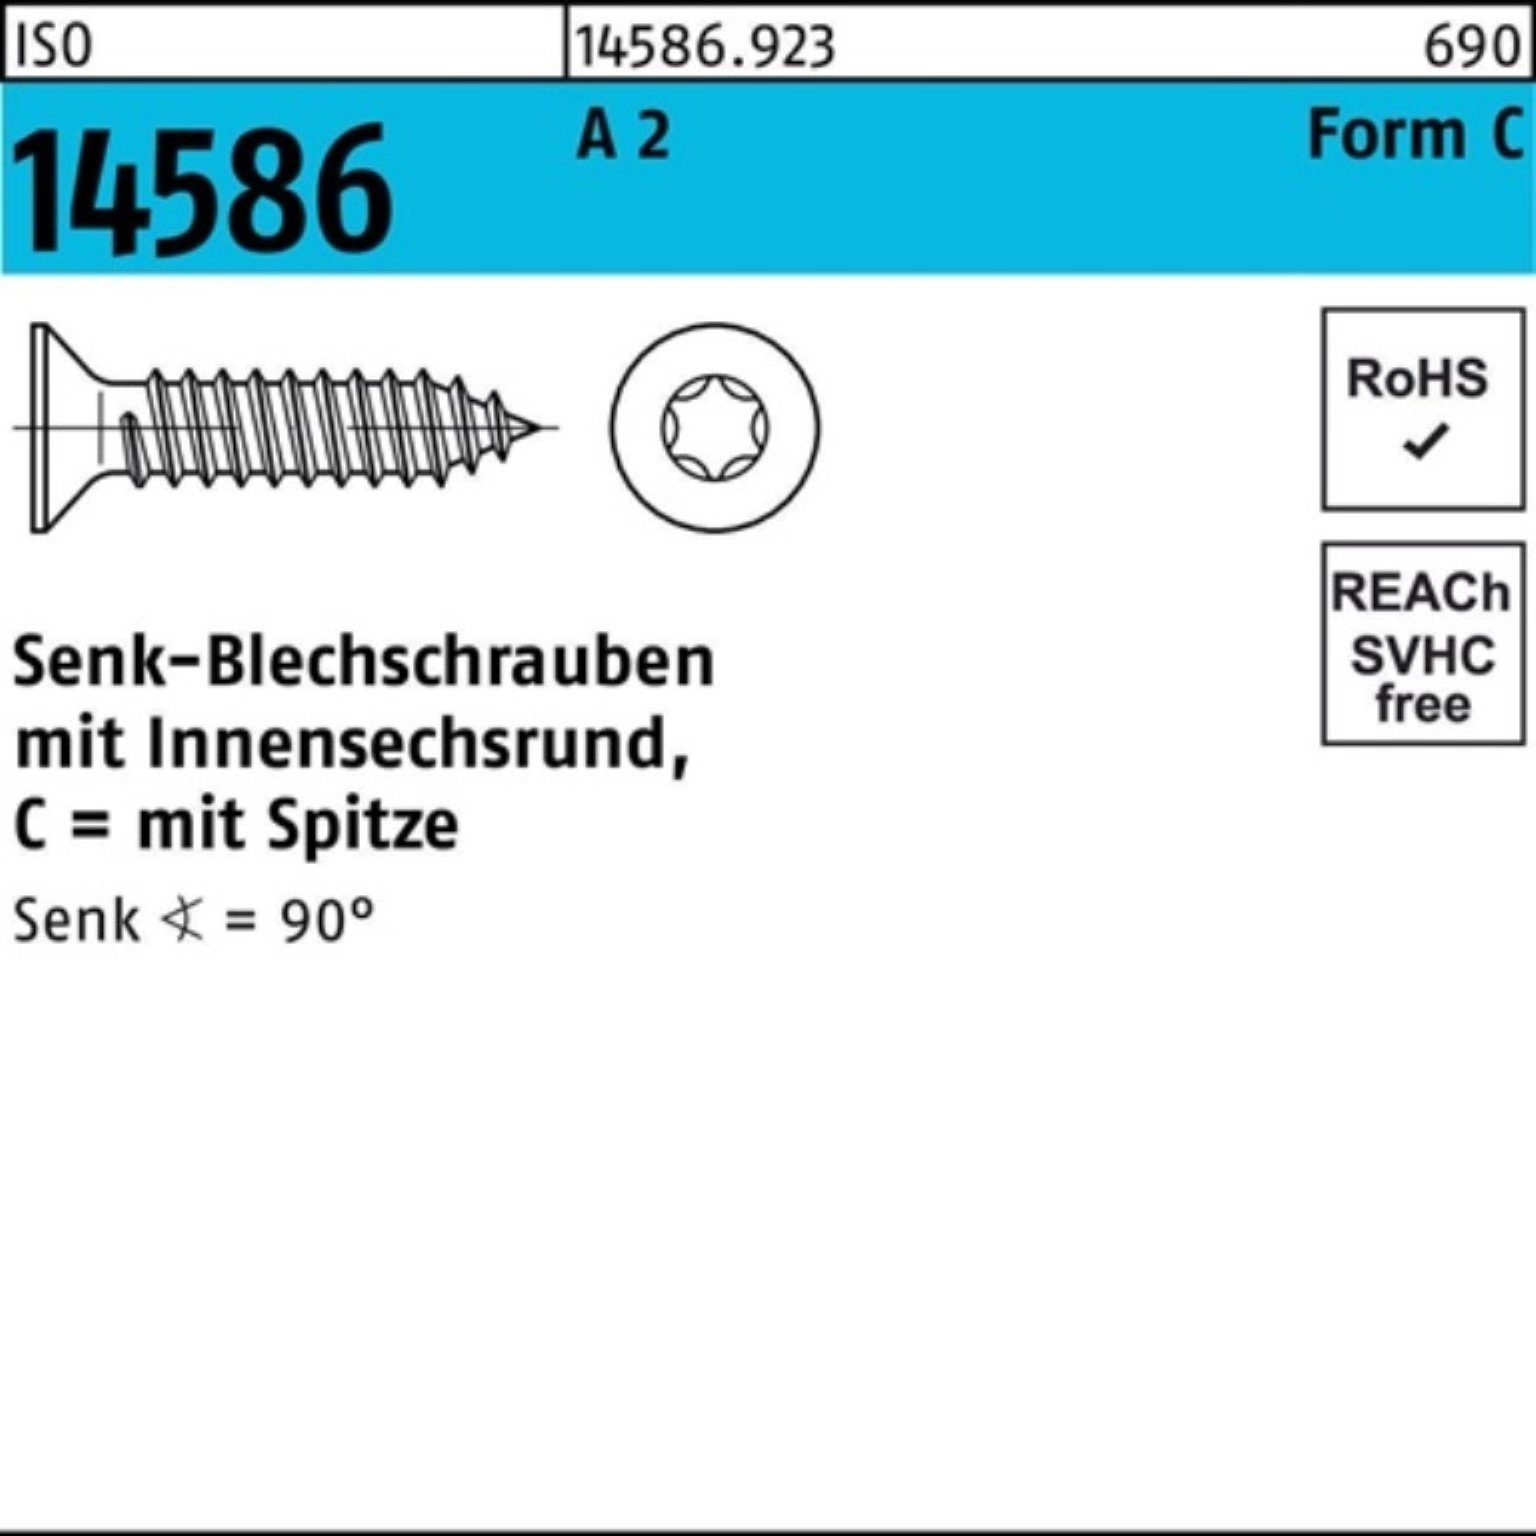 Schraube A 500er T20 2 ISR/Spitze Senkblechschraube Pack -C Reyher 5 4,2x 14586 19 ISO